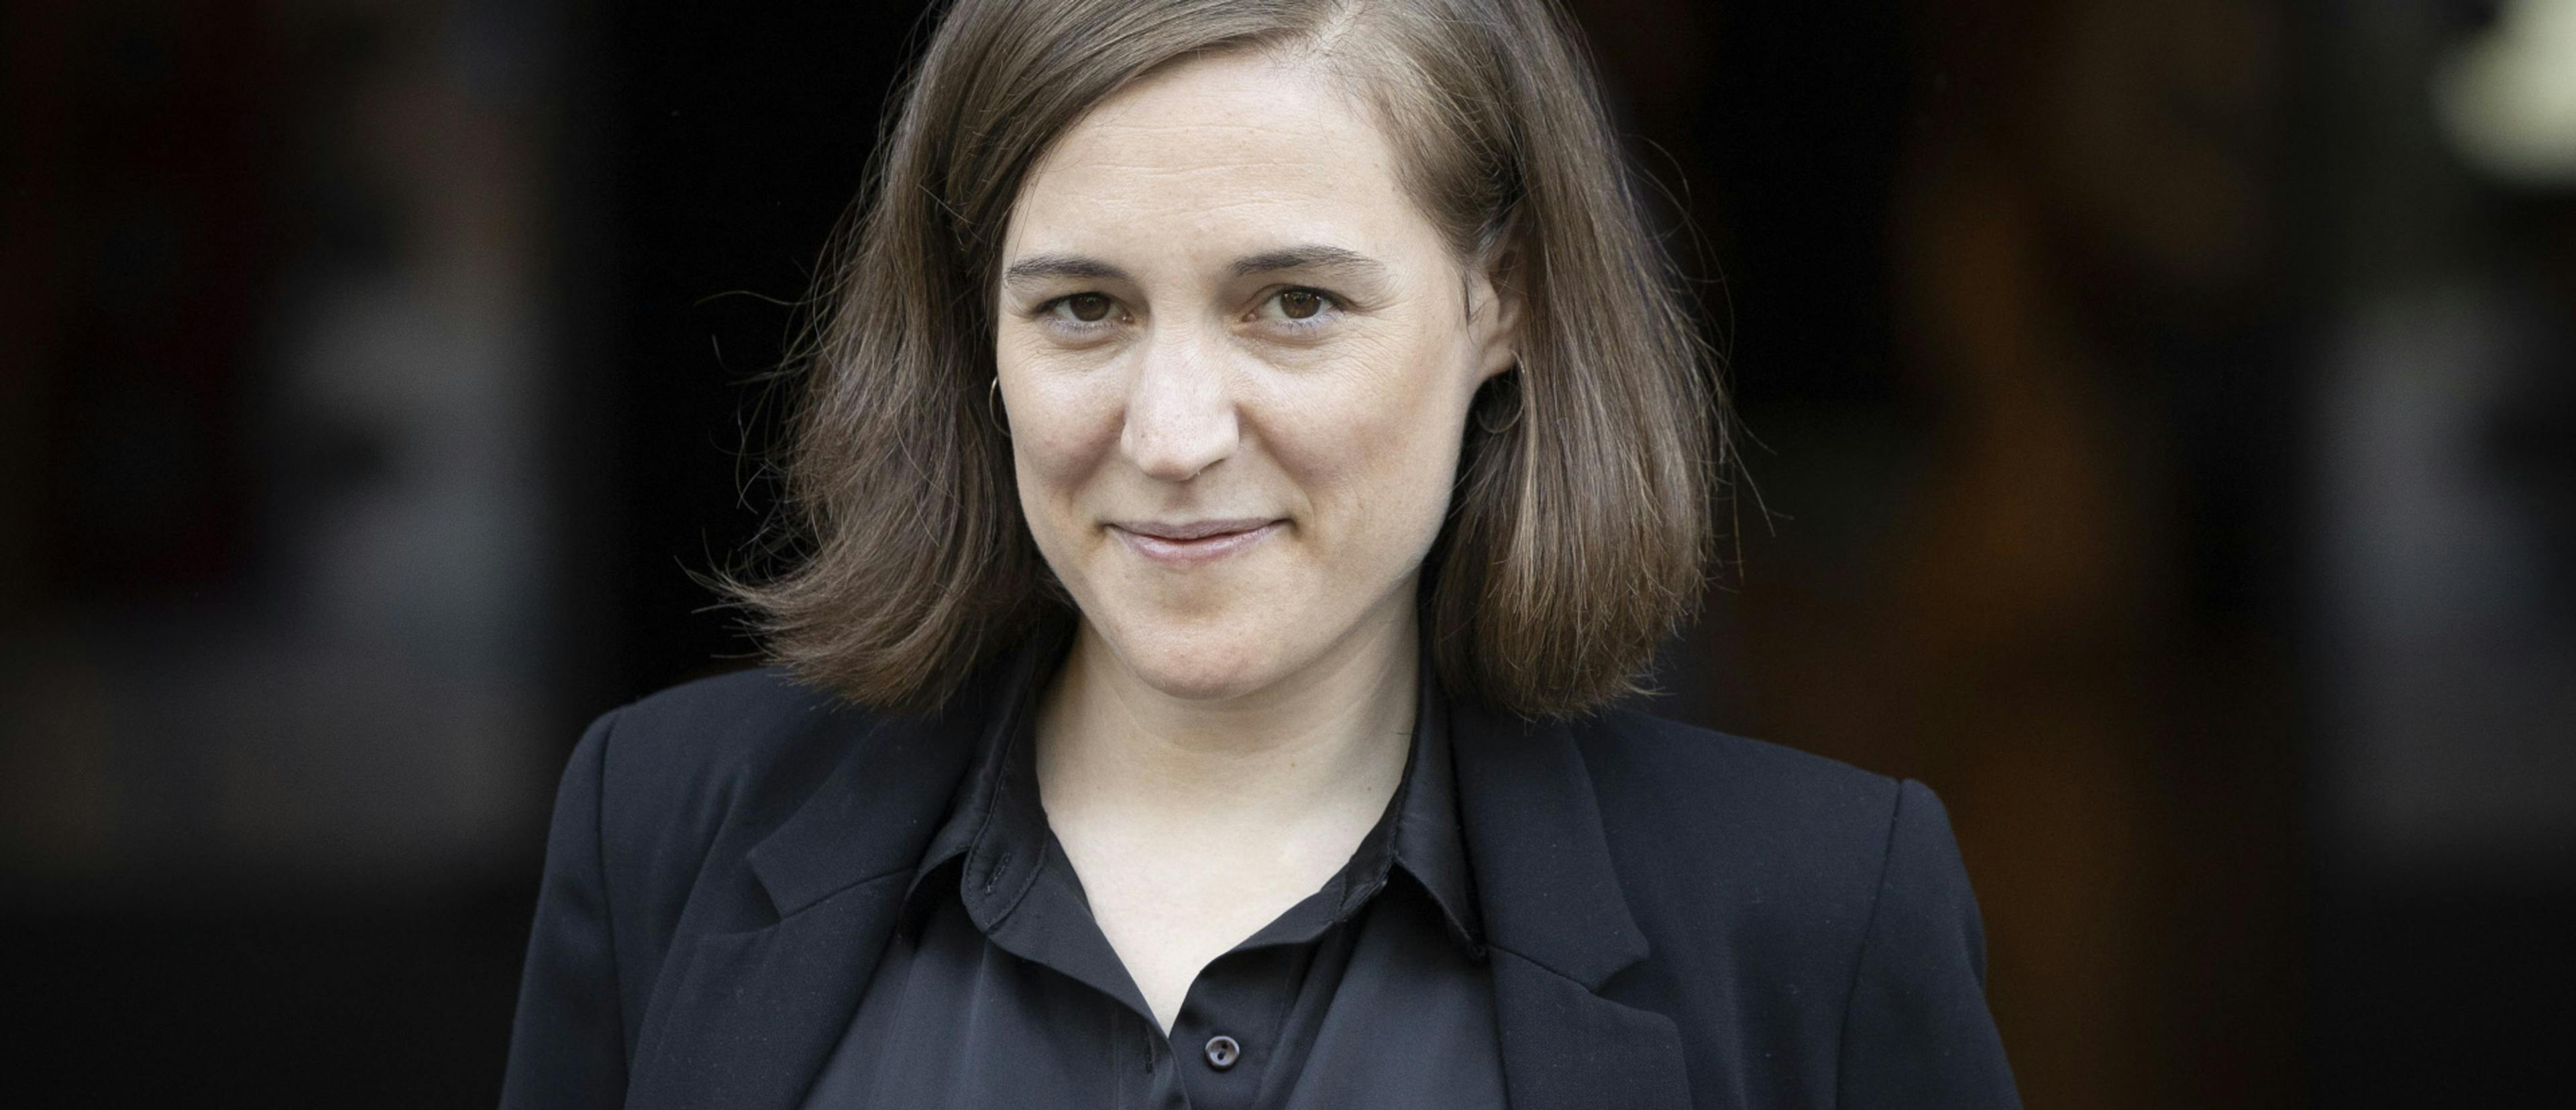 Carla Simón es la flamante ganadora del Premio Nacional de Cinematografía